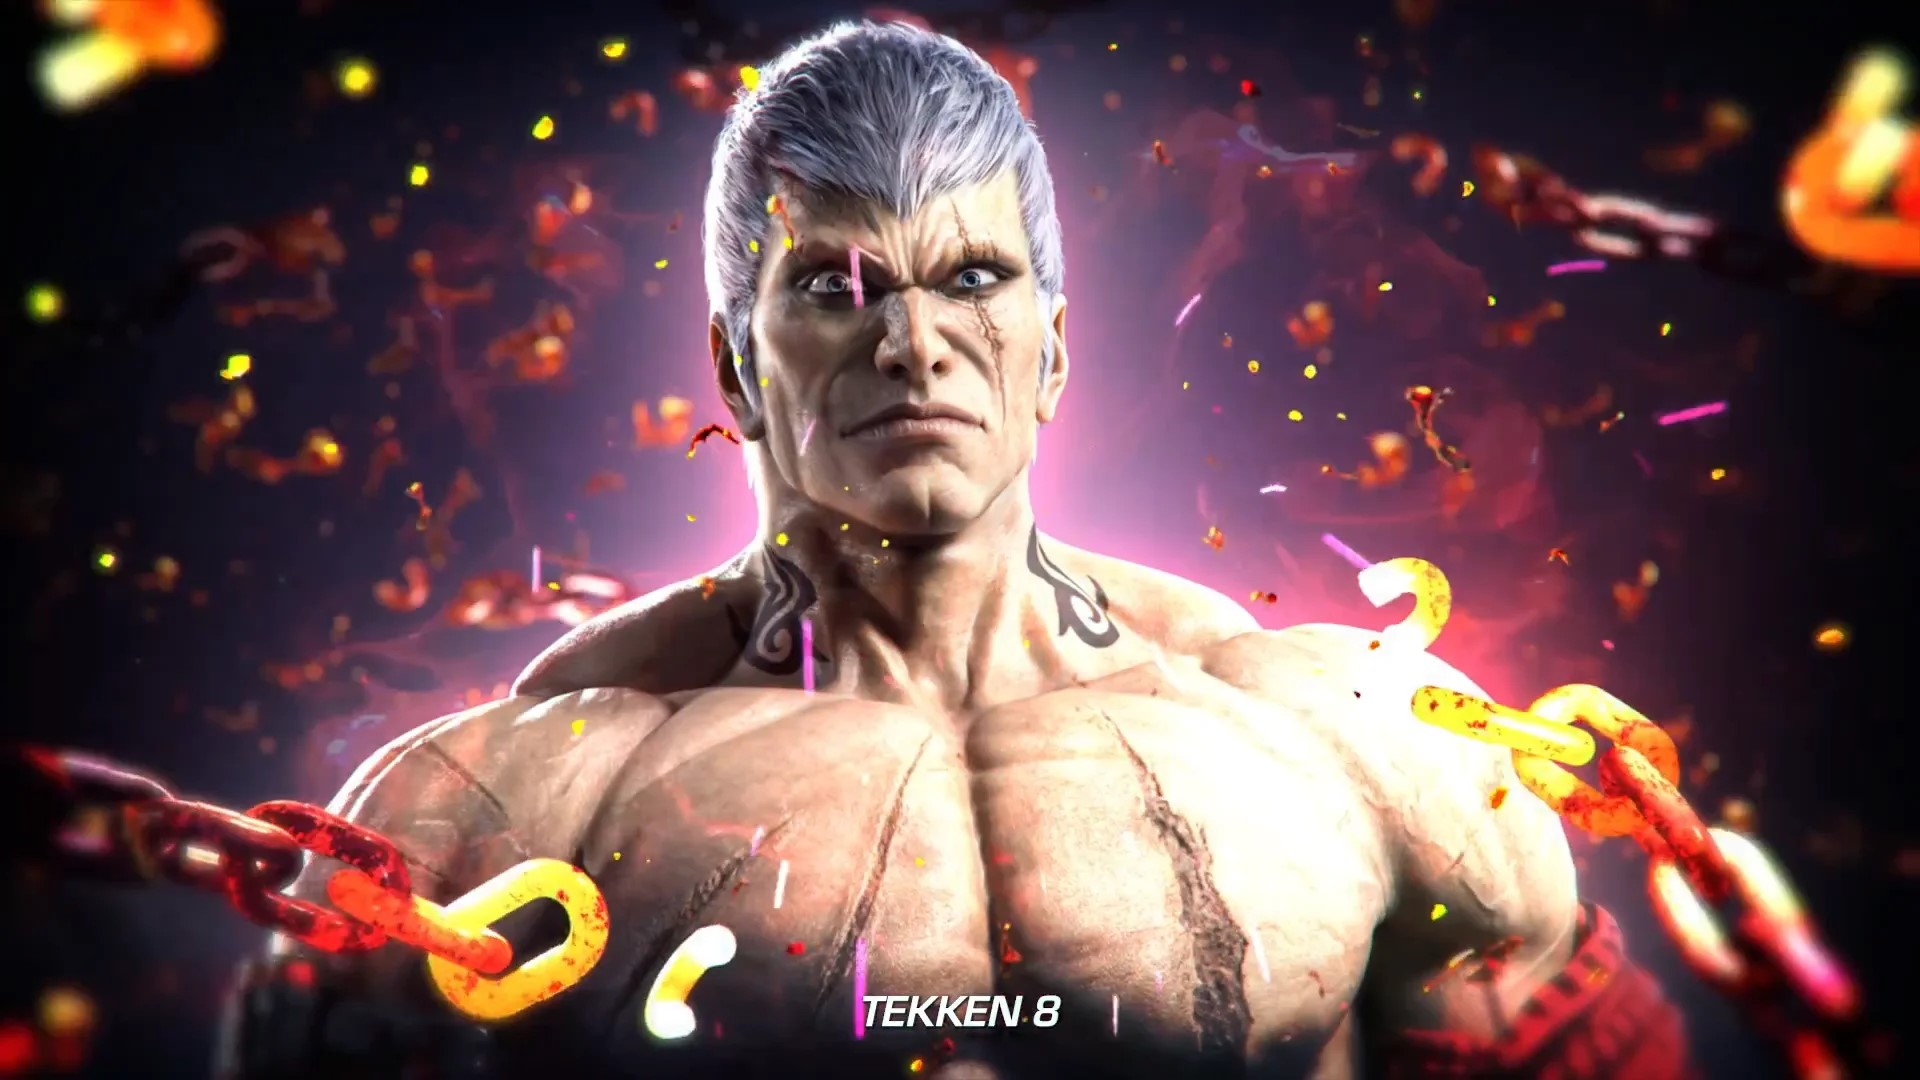 انتشار تریلر جدید بازی Tekken 8 با محوریت نمایش شخصیت برایان فیوری